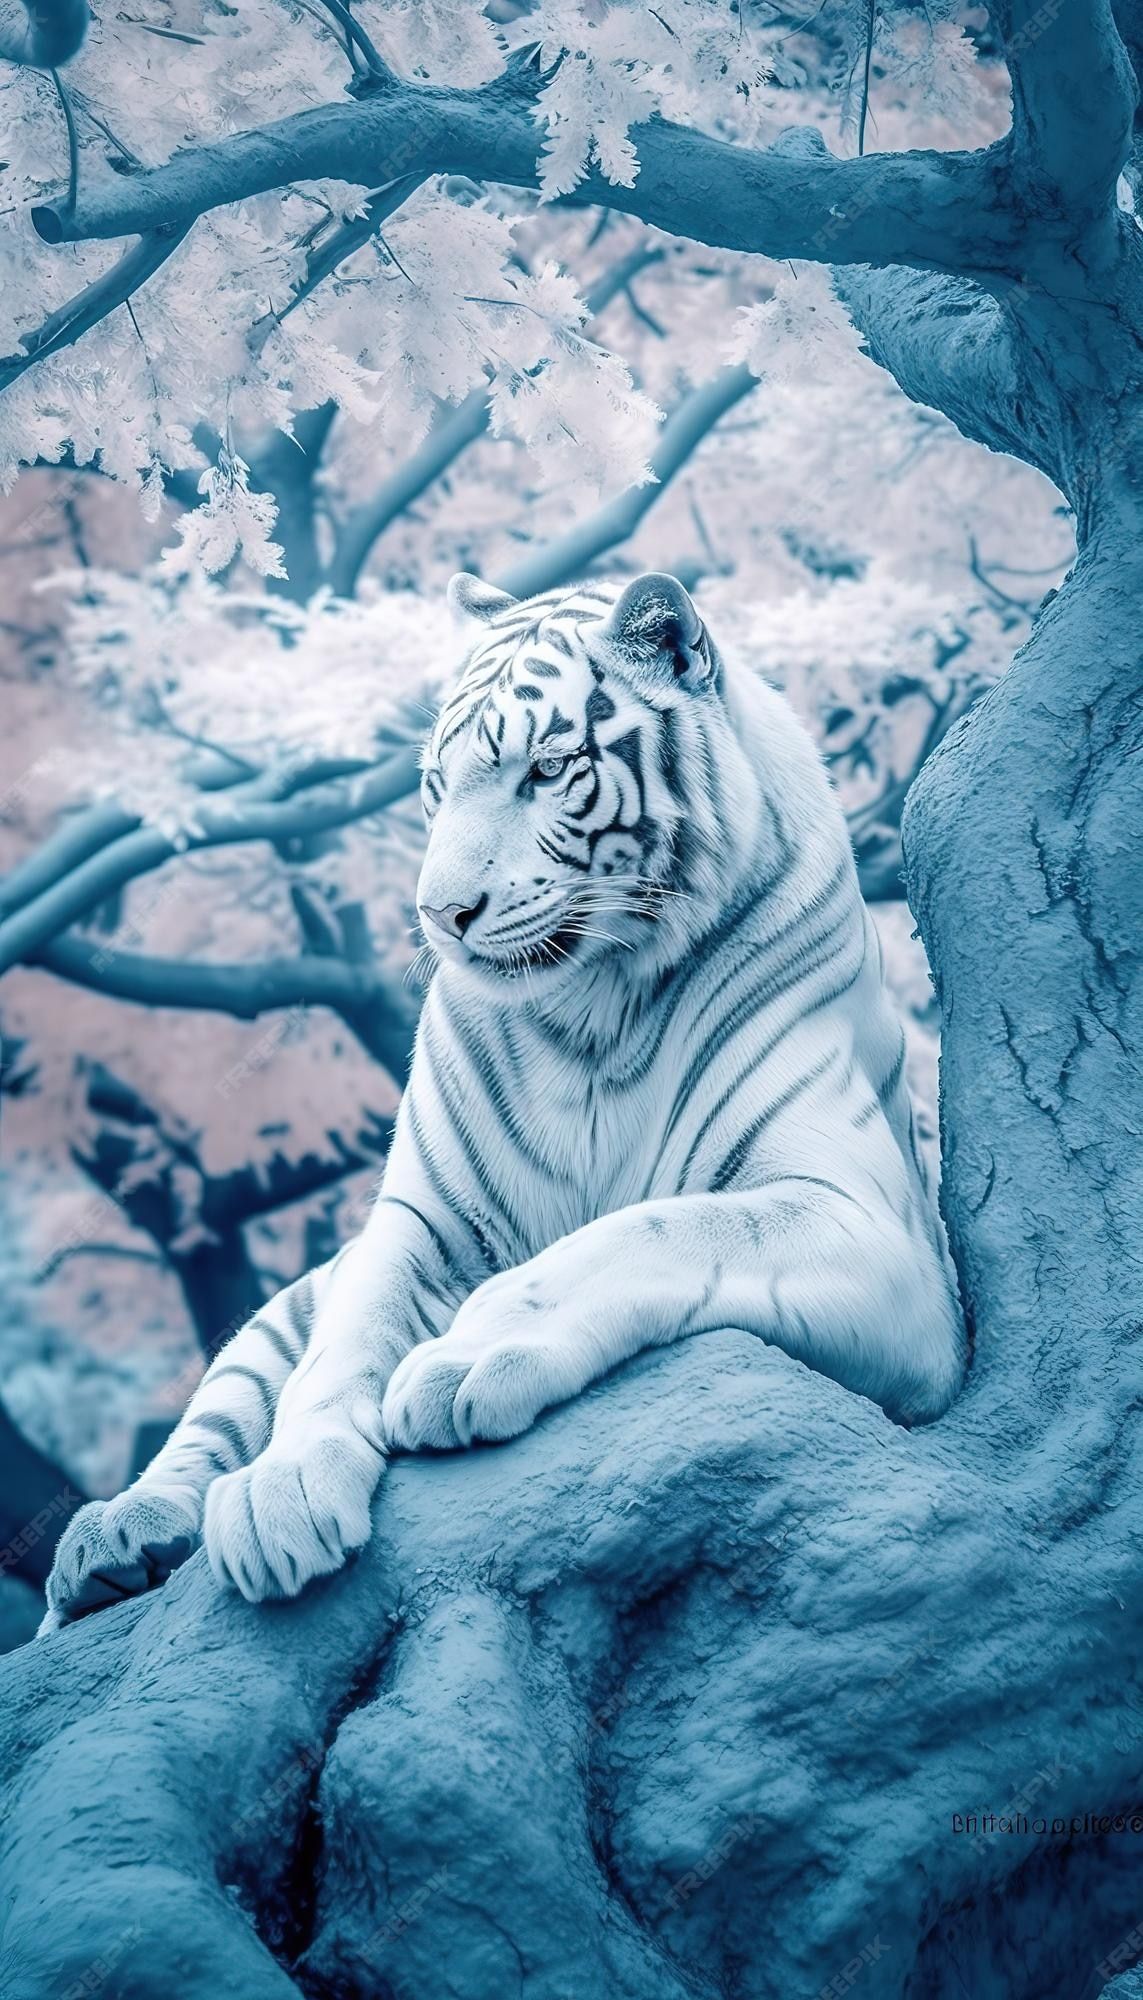  Weißer Tiger Hintergrundbild 1143x2000. Weißer tiger in einem baum